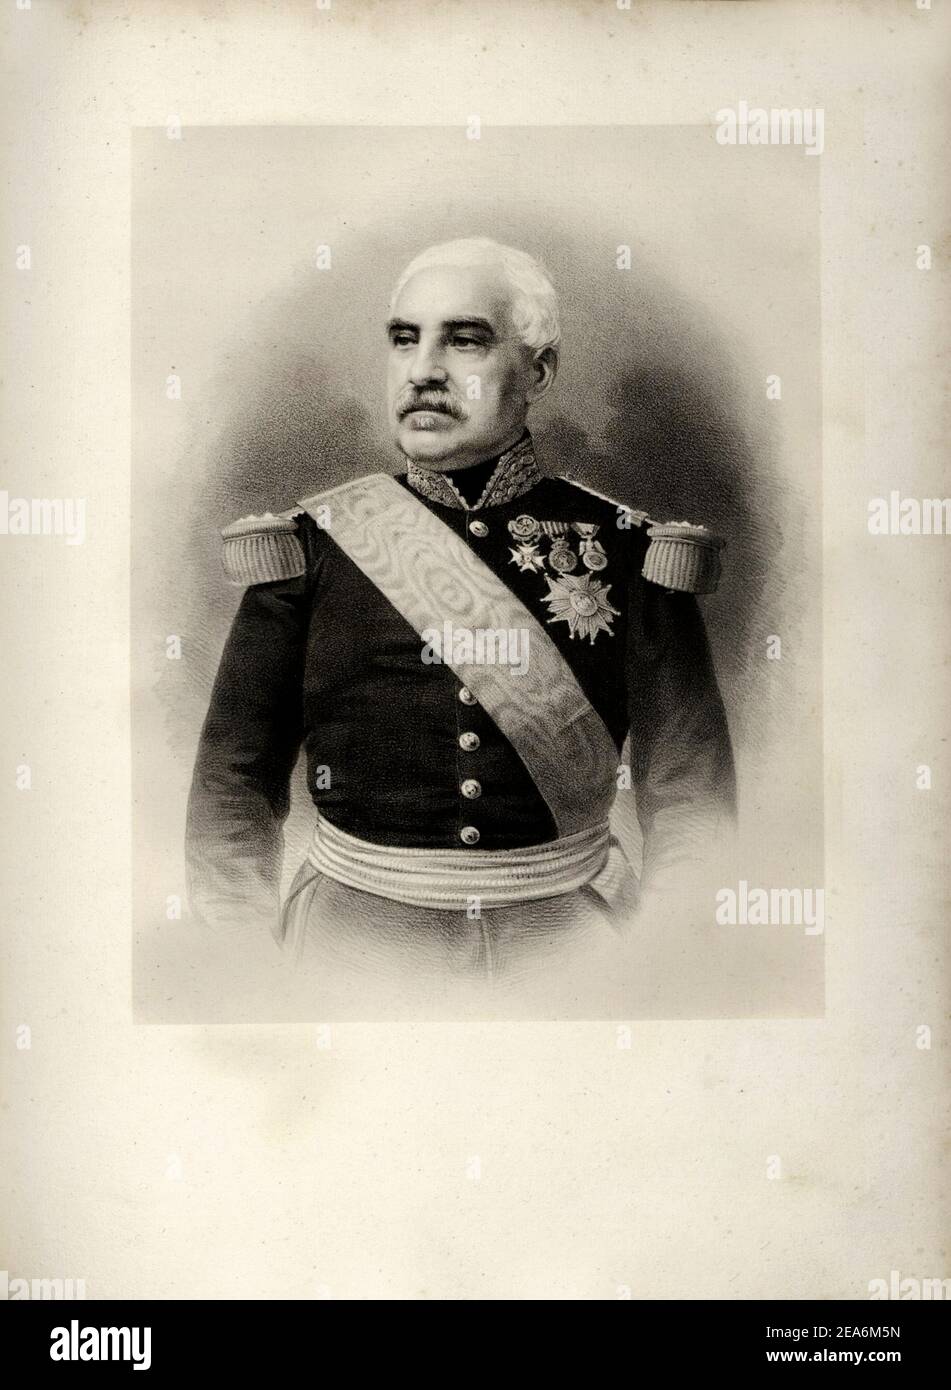 Aimable-Jean-Jacques Pelissier, 1. Duc de Malakoff (1794-1864), Marschall von Frankreich. Oberbefehlshaber der französischen Streitkräfte vor der Belagerung o Stockfoto